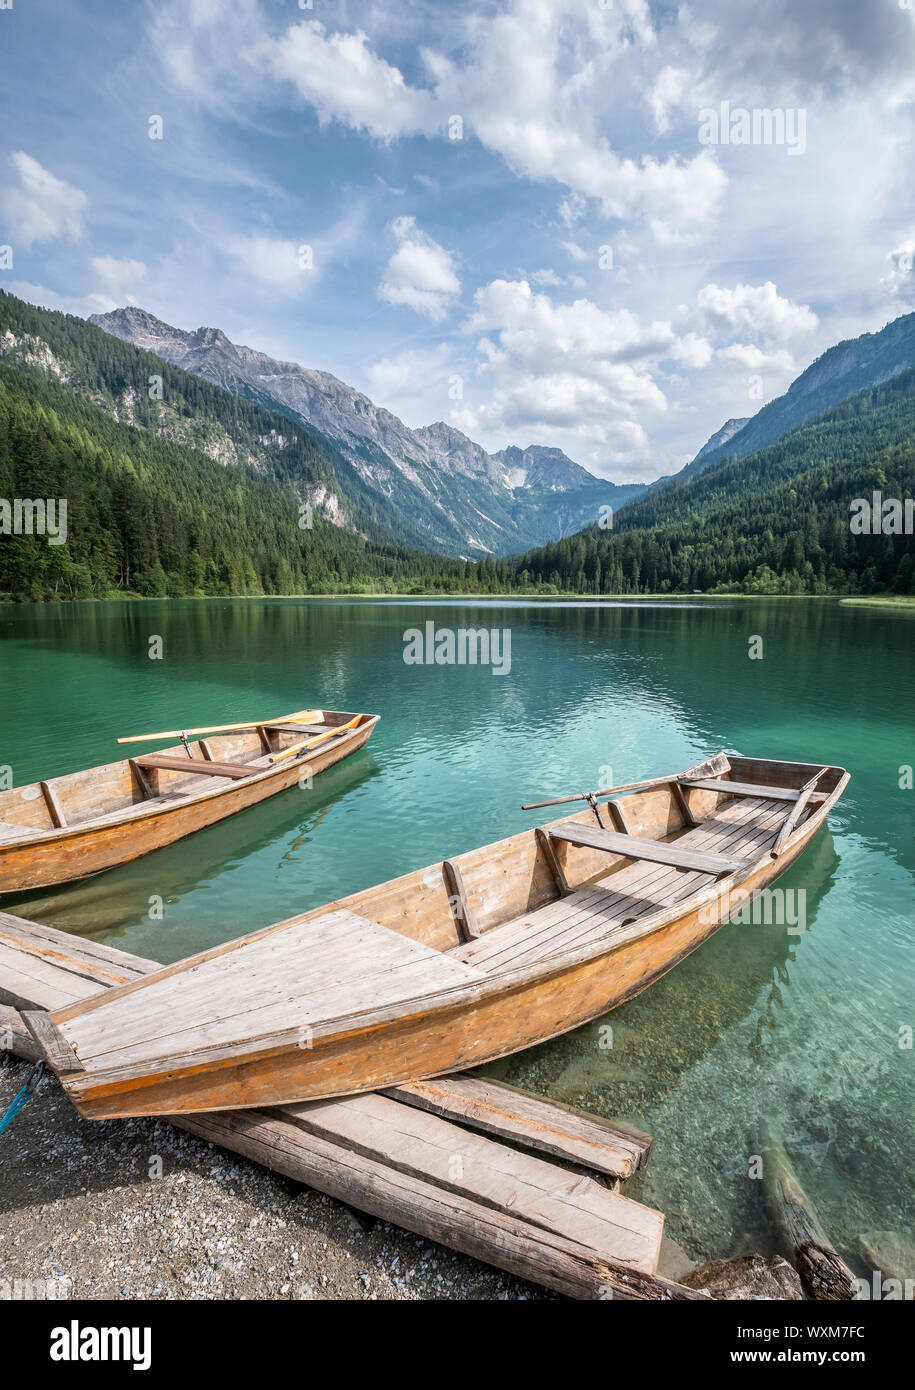 Paysage de montagne pittoresque avec lac turquoise et bateau en bois au jour d'été ensoleillé des Alpes en Autriche Banque D'Images